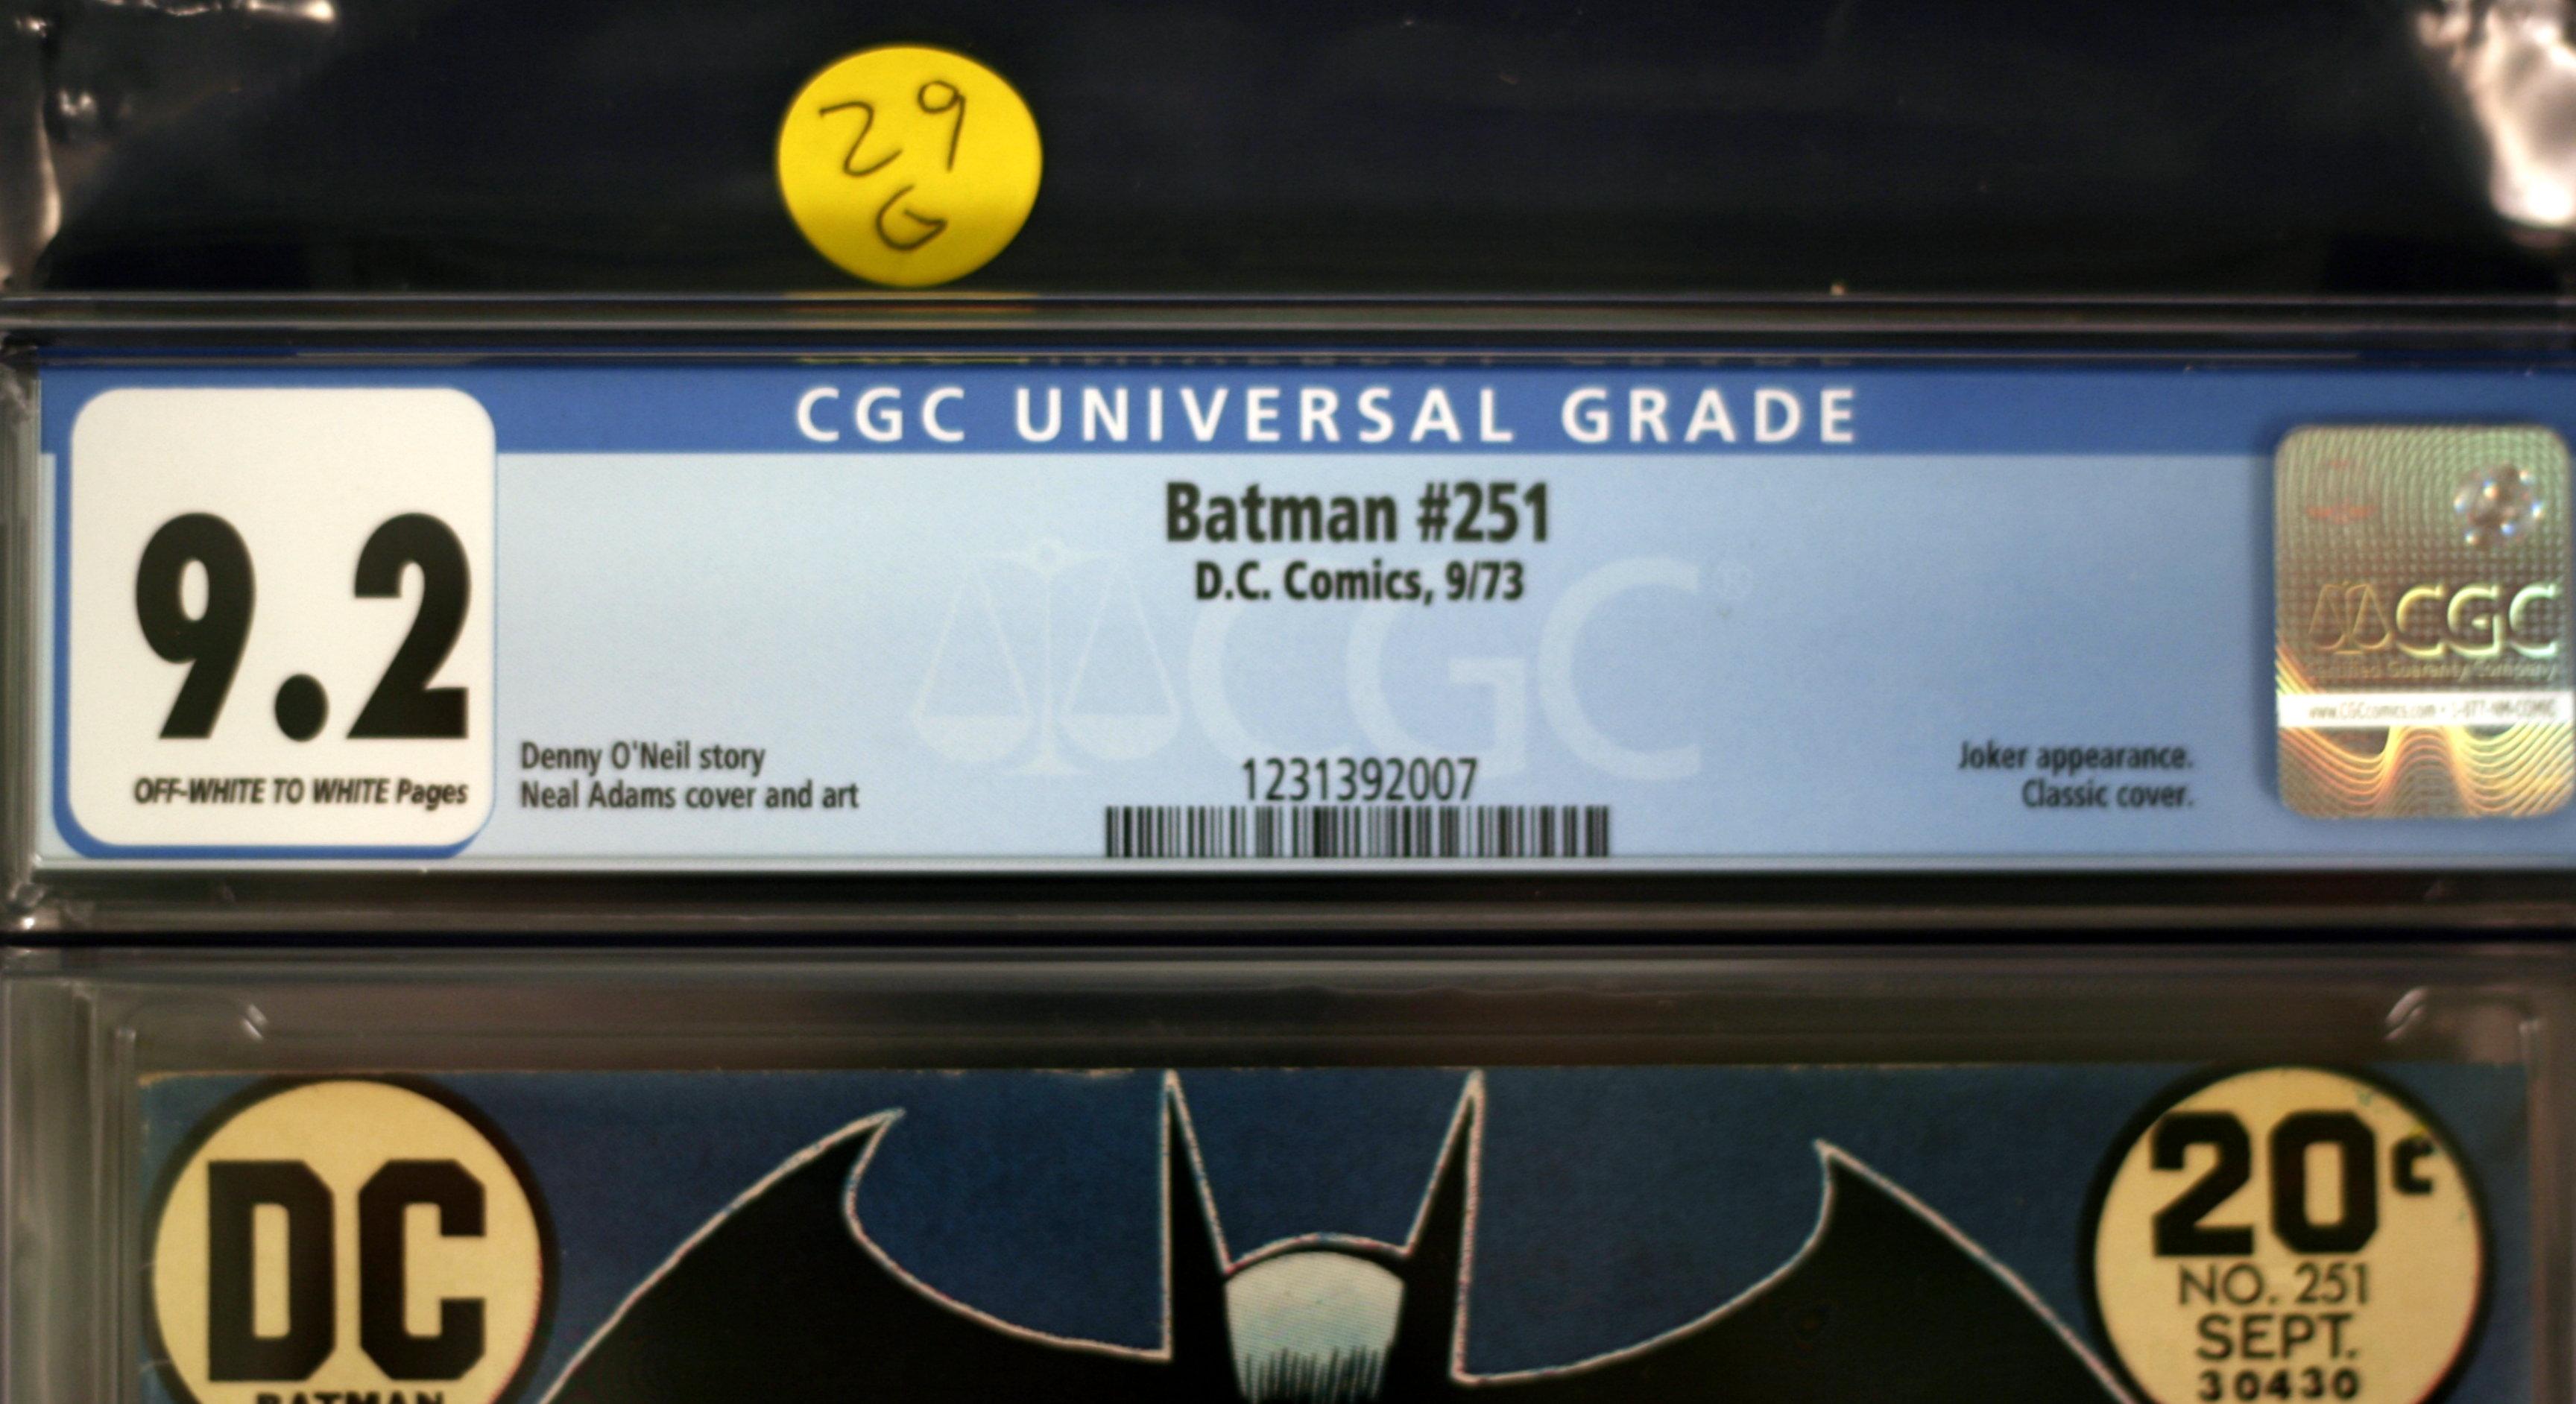 Batman #251 - Neal Adams Classic Joker Cover - CGC 9.2!